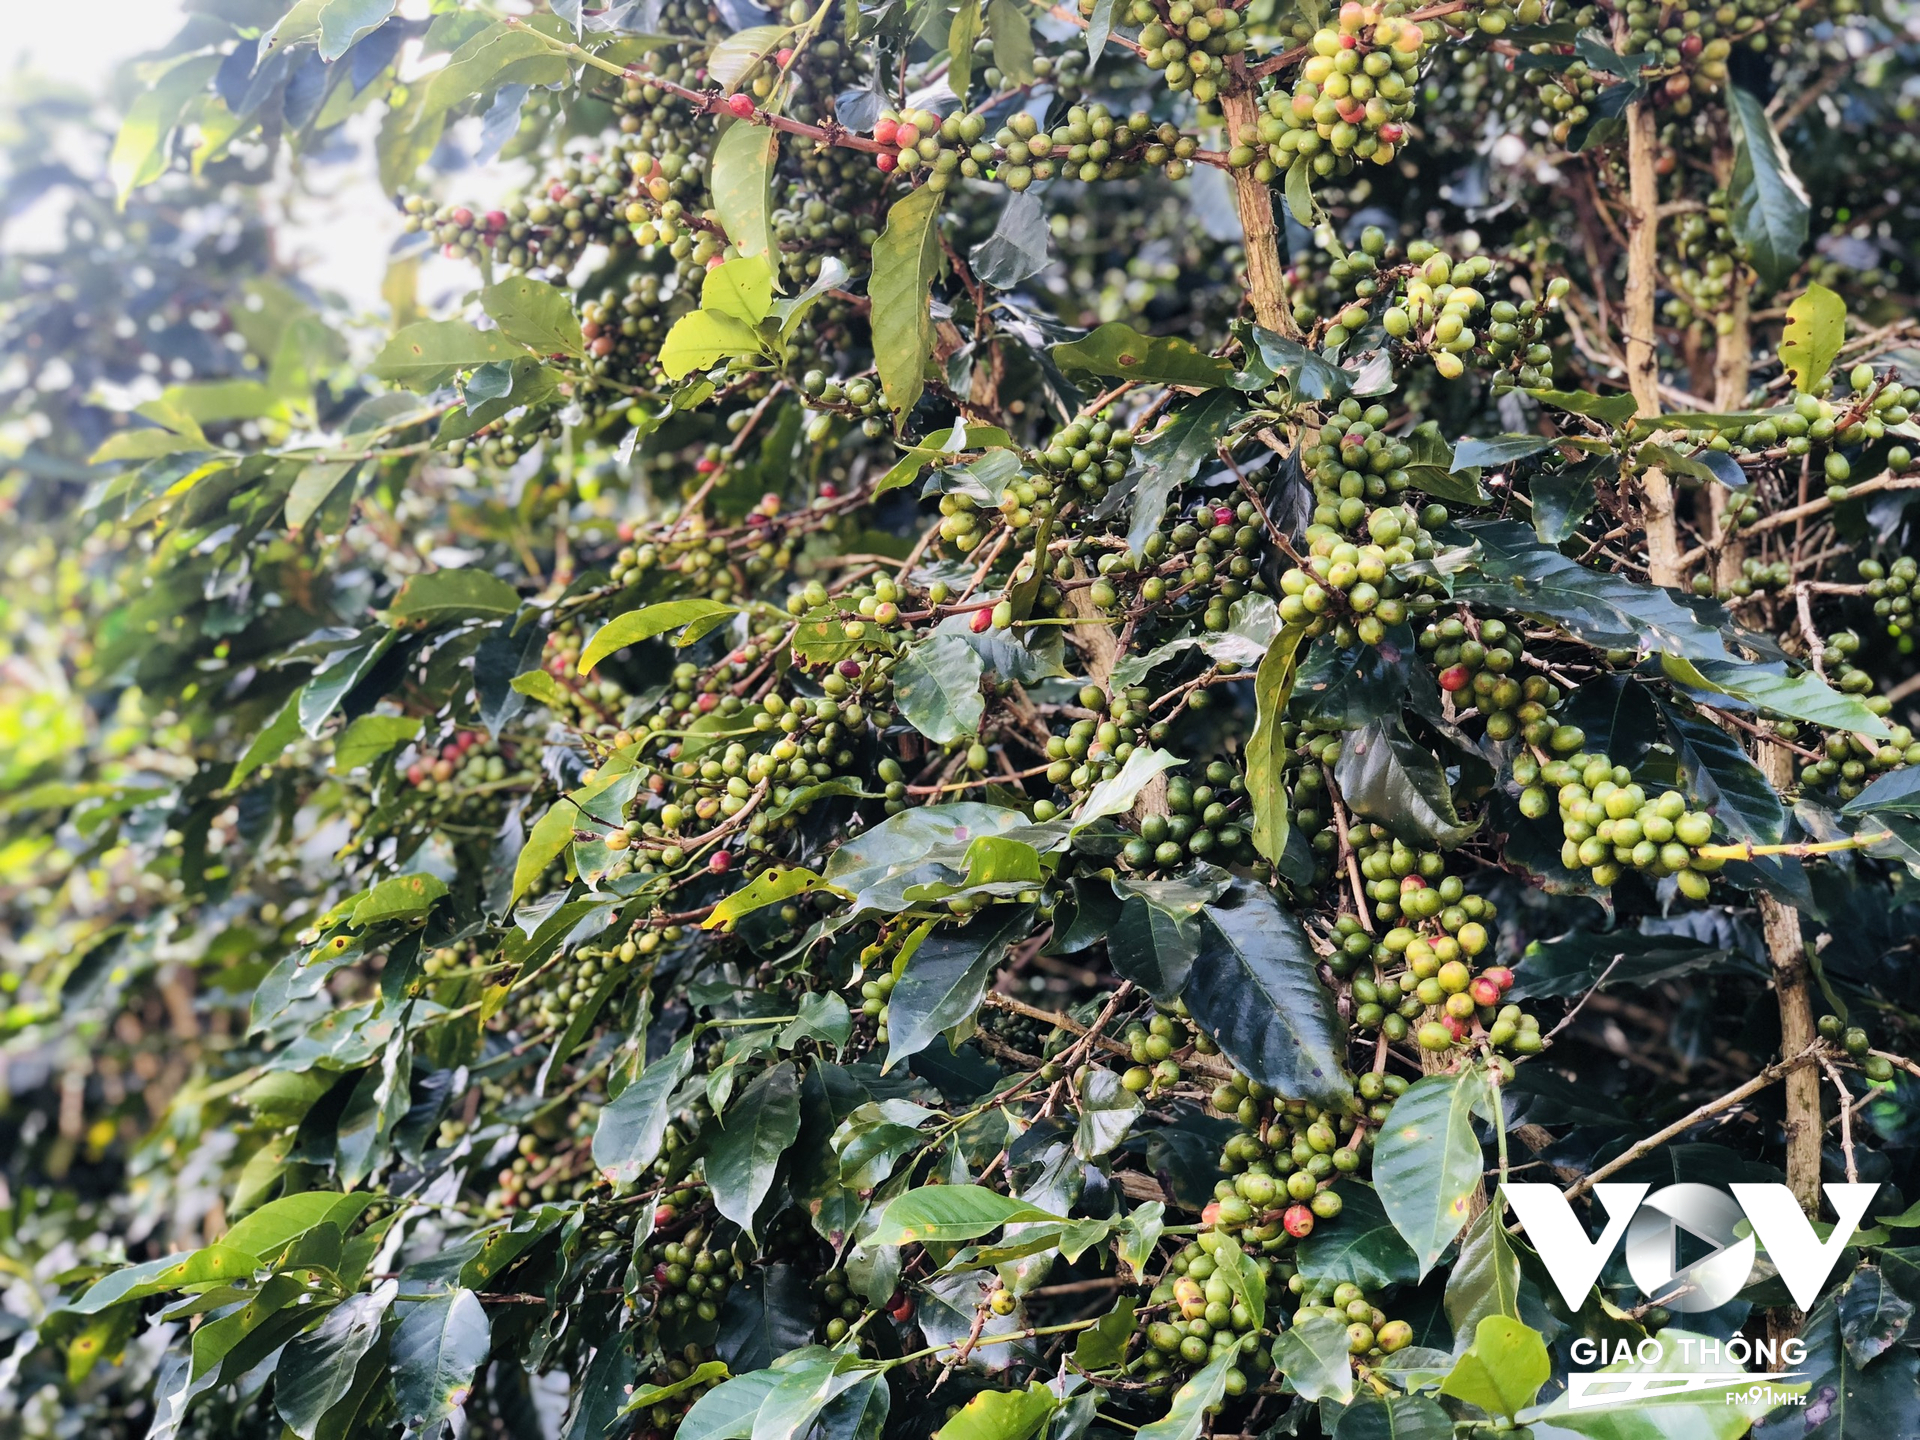 Cà phê Arabica trồng ở Đà Lạt được coi là chất lượng nhất